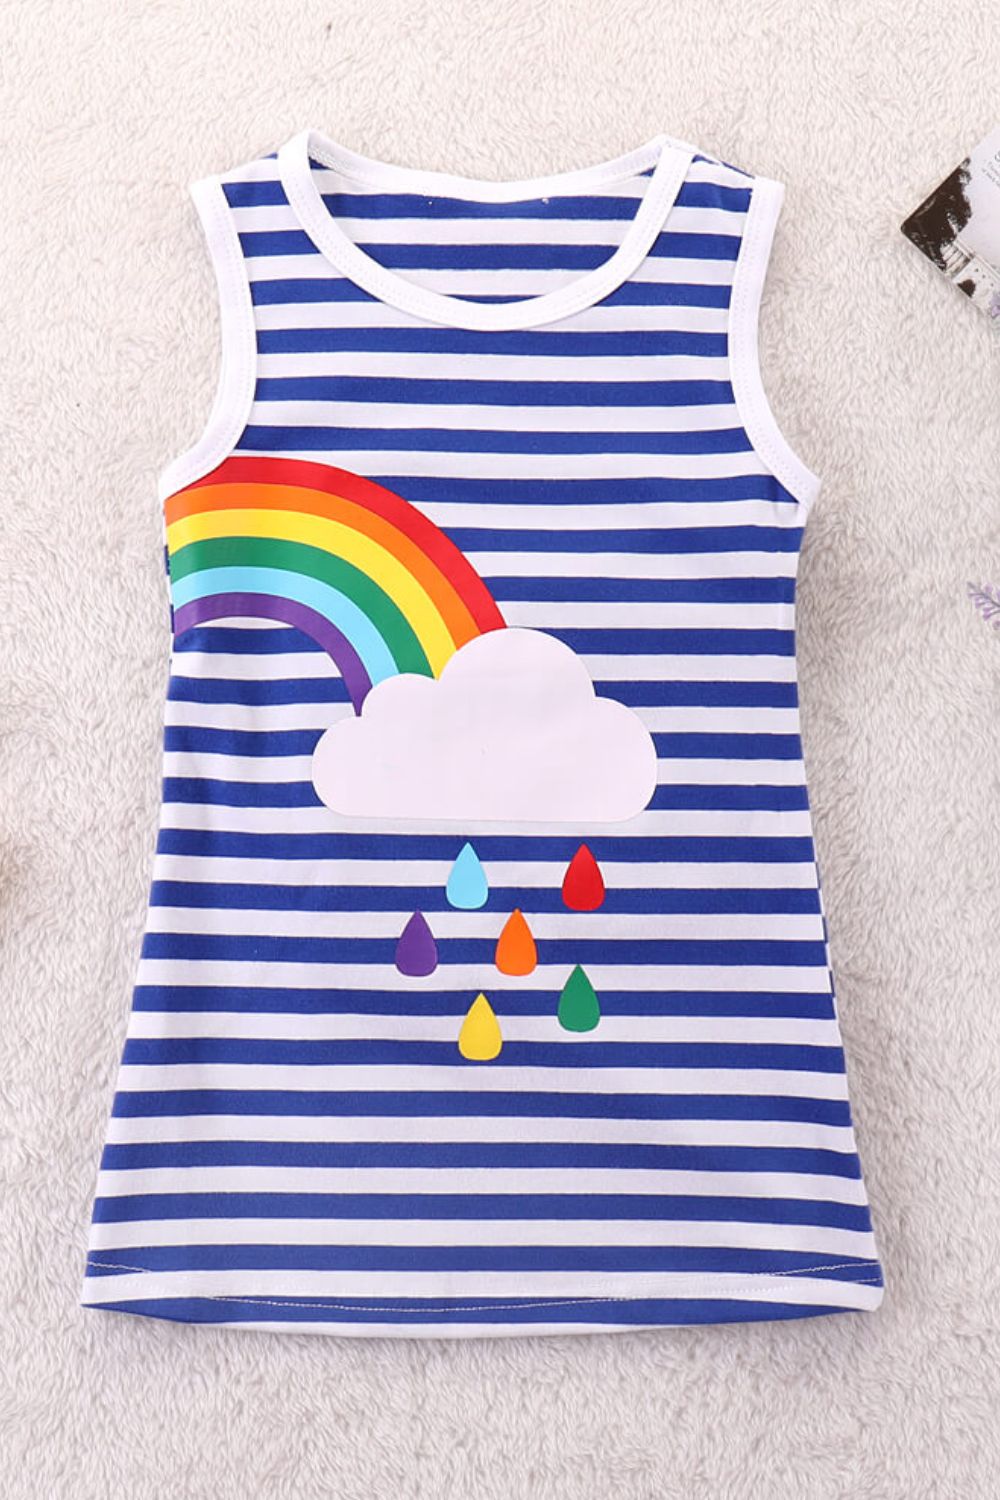 Children’s Girls Rainbow Graphic Striped Sleeveless Dress